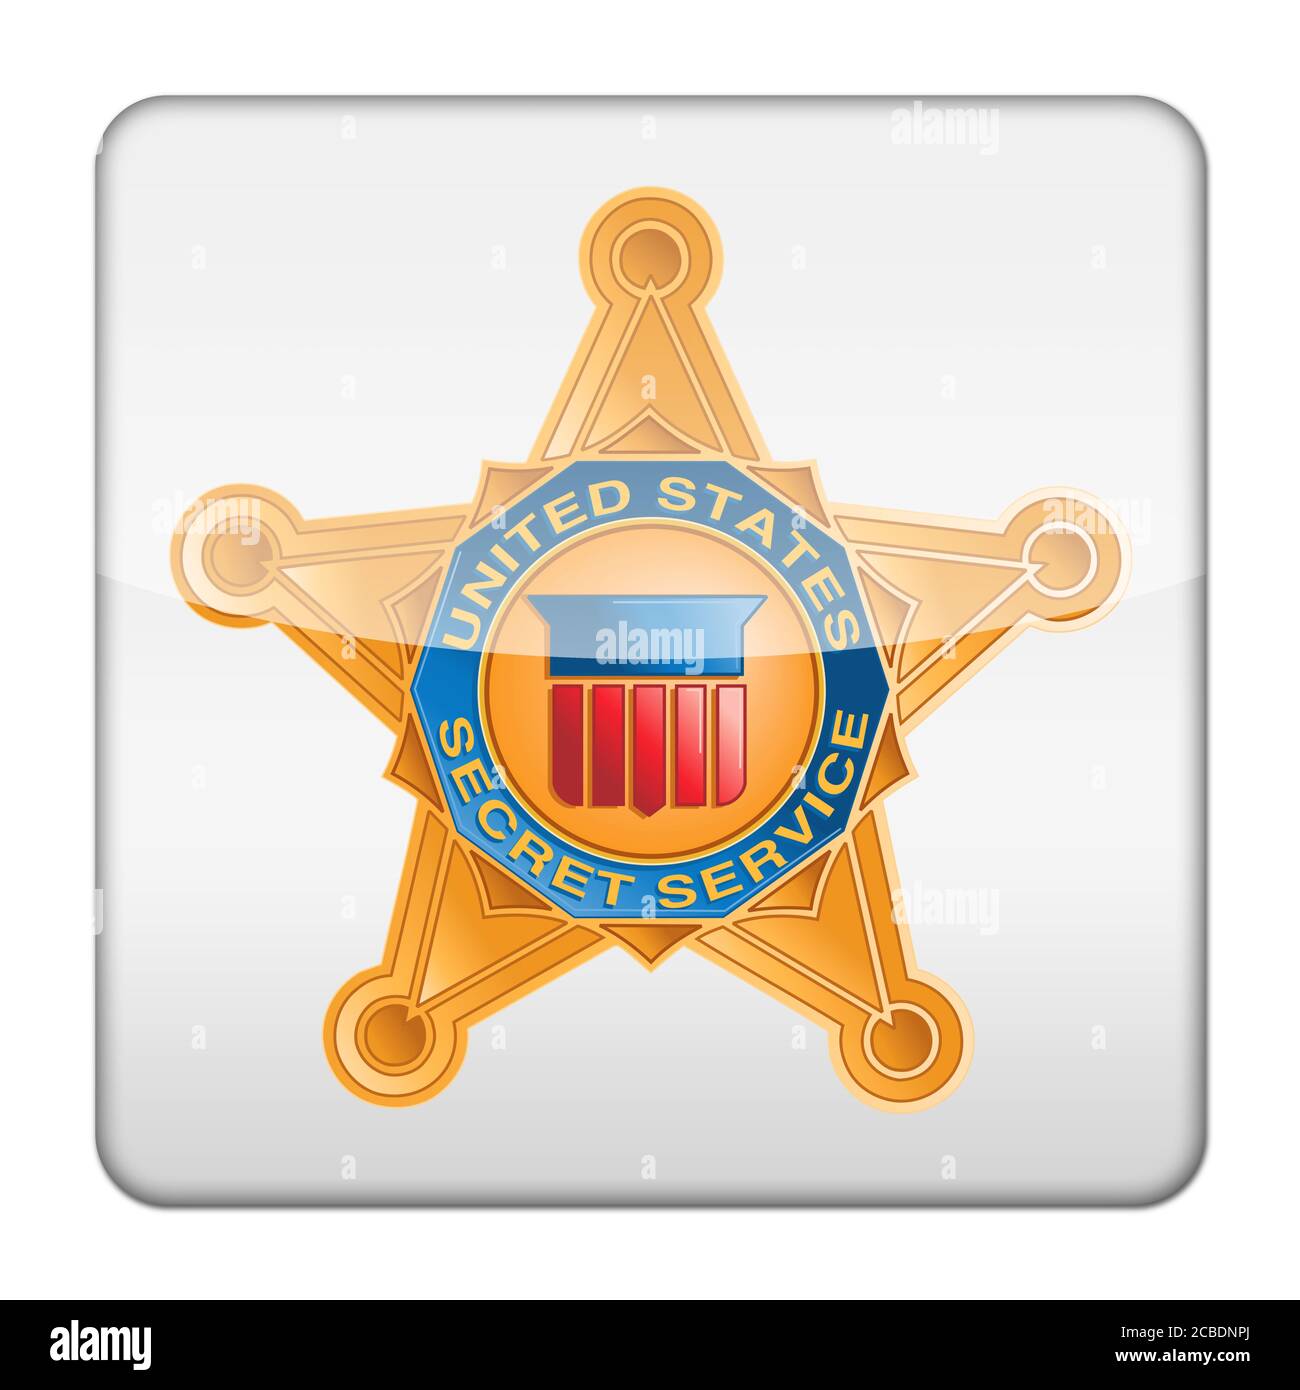 El logotipo del Servicio Secreto de los Estados Unidos icono del botón de aplicaciones aisladas Foto de stock